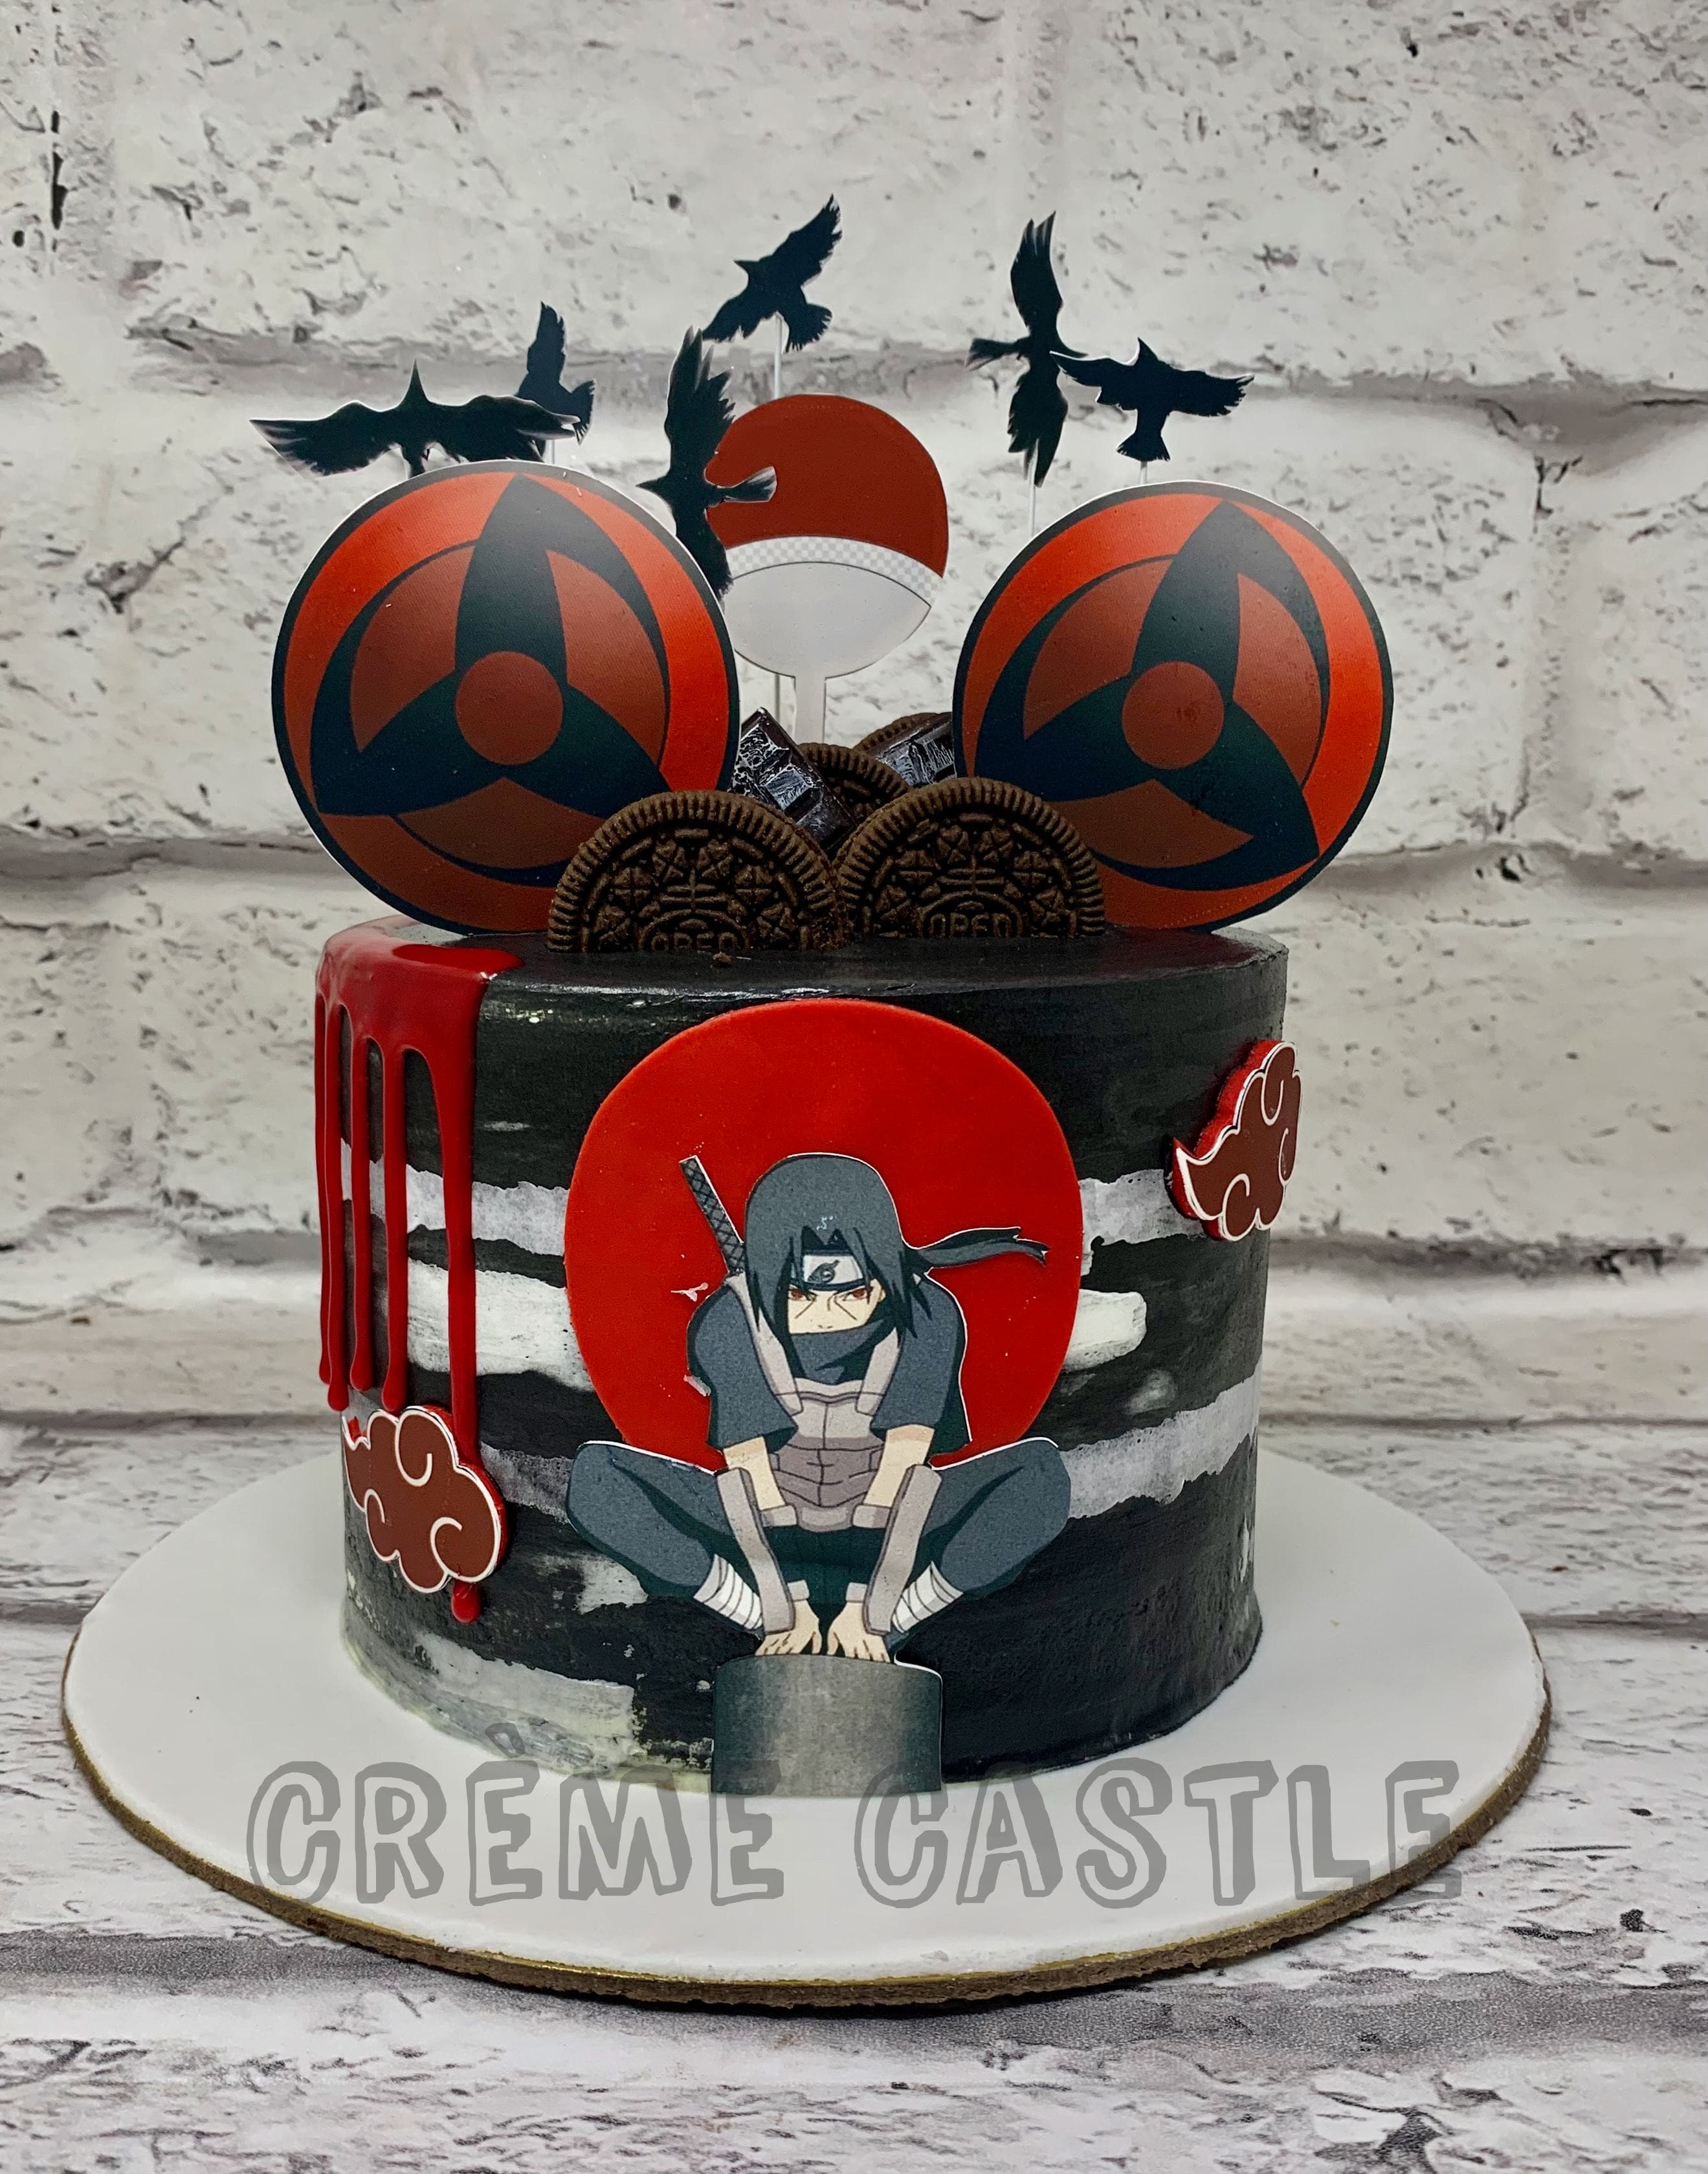 FairyTail Cake | Anime cake, Cake, Cake designs